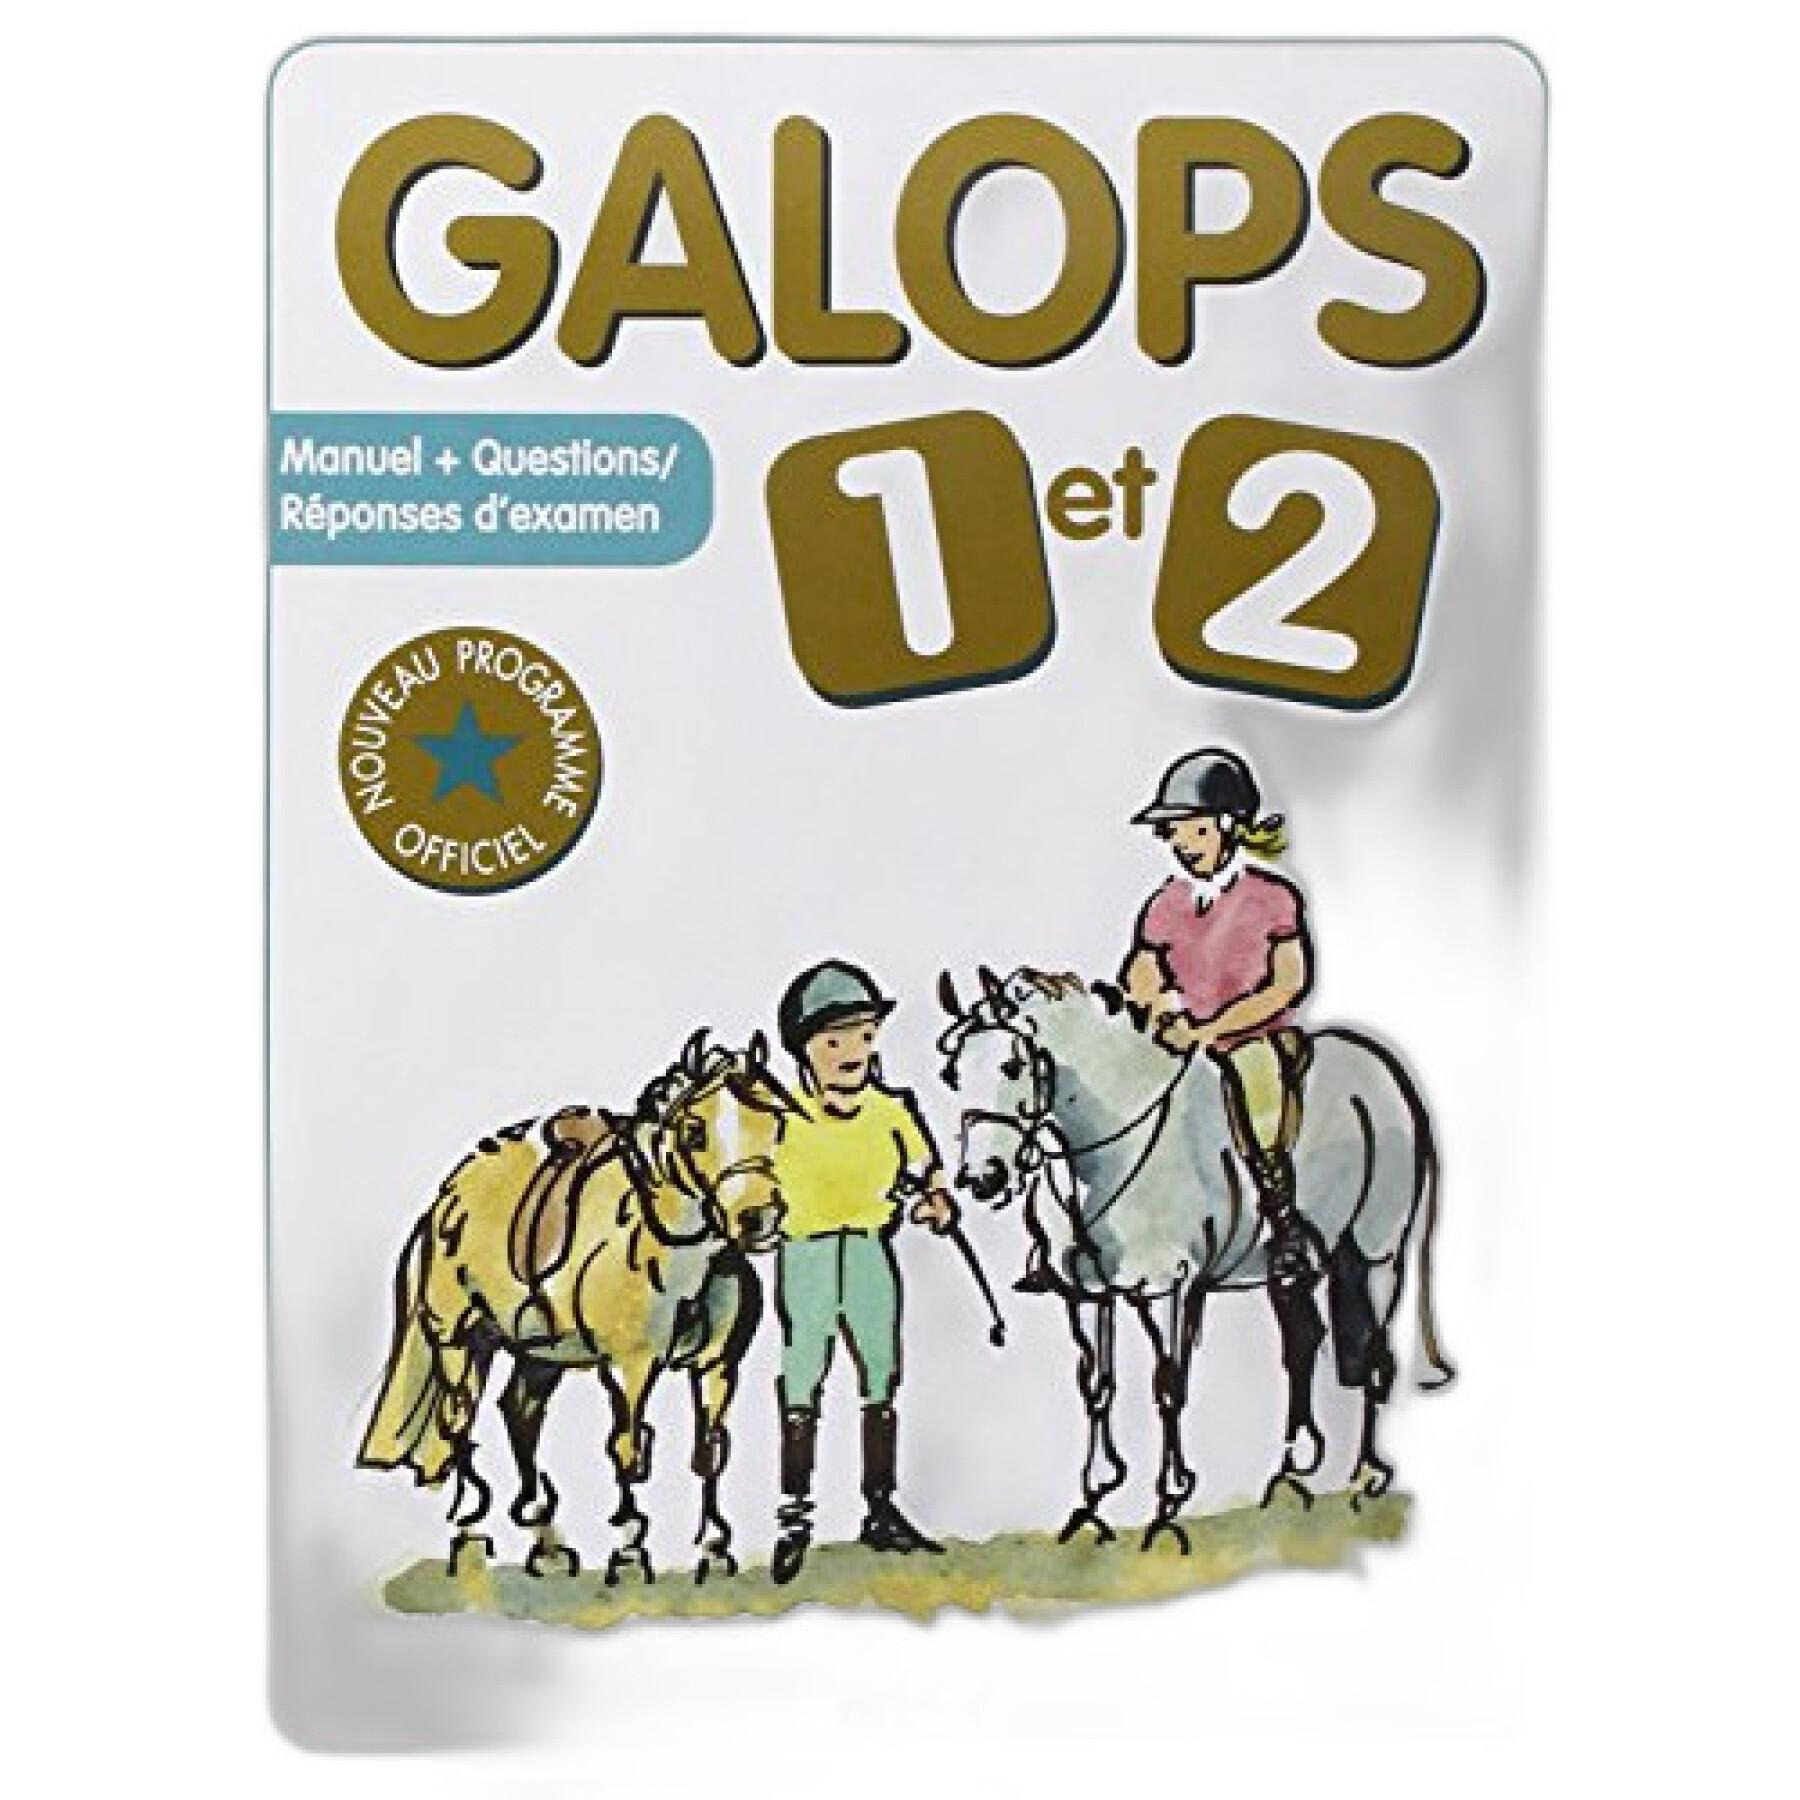 Les parties de la tete  Galop 3, Anatomie du cheval, Galop